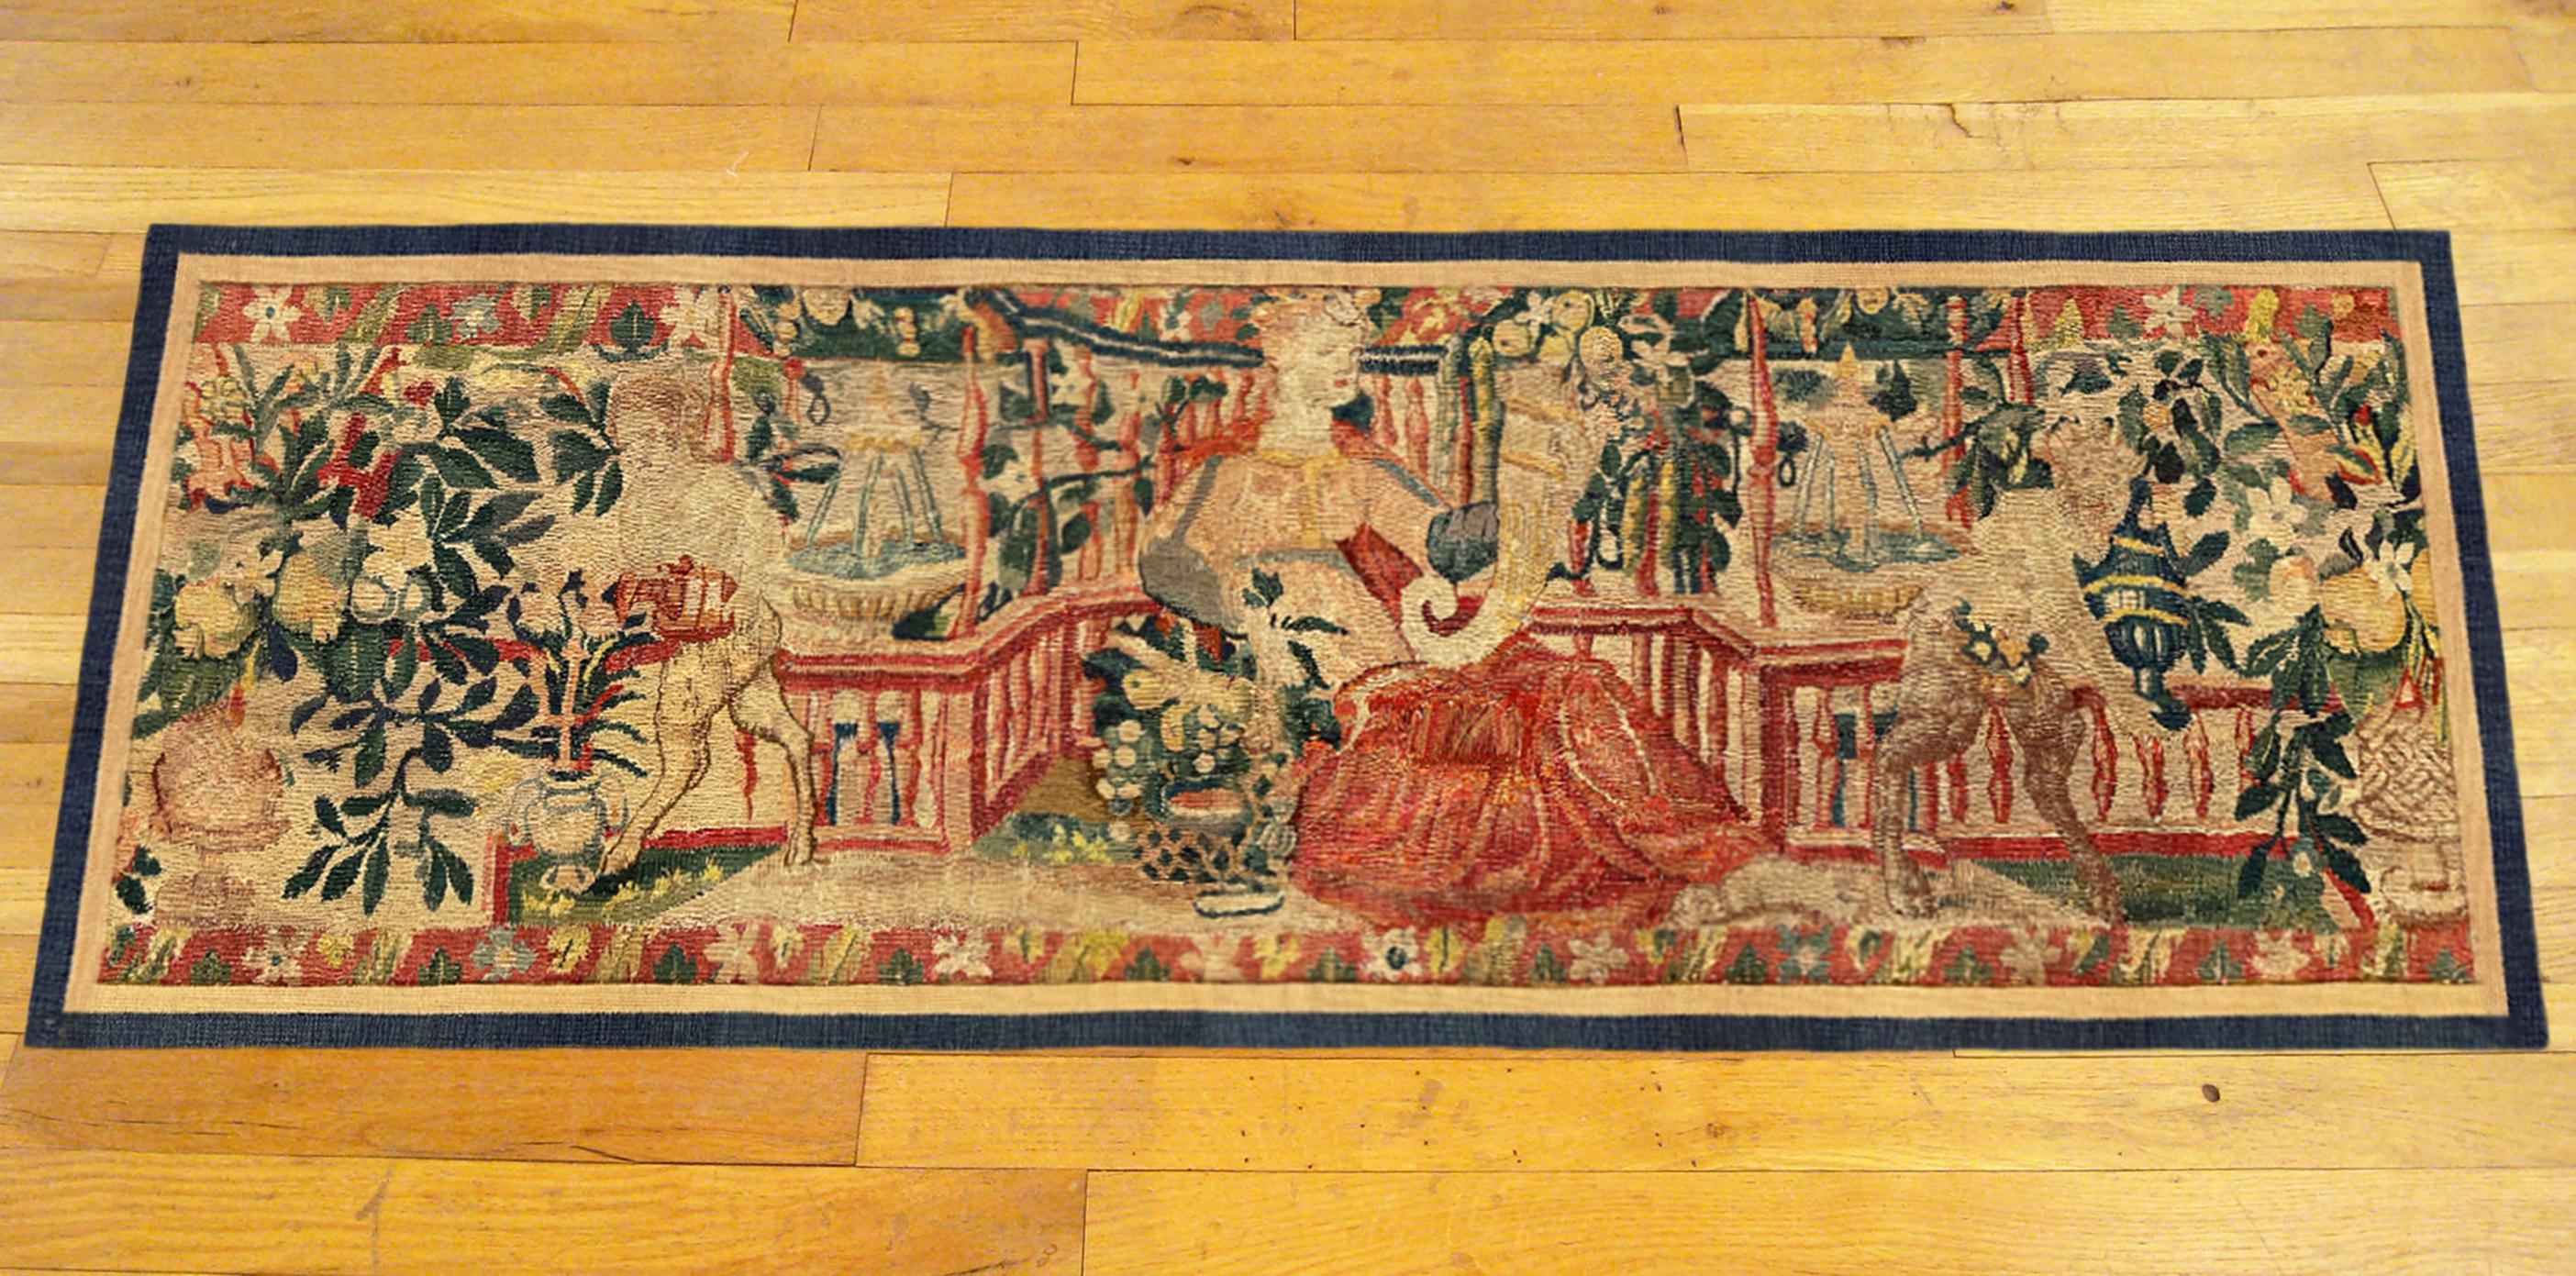 Ein flämischer mythologischer Wandteppich aus dem späten 16. Dieses horizontal ausgerichtete dekorative Wandteppich-Paneel zeigt in der Mitte eine weibliche Figur, die in einer Hand ein Füllhorn hält. Satyrn flankieren sie zu beiden Seiten in einem